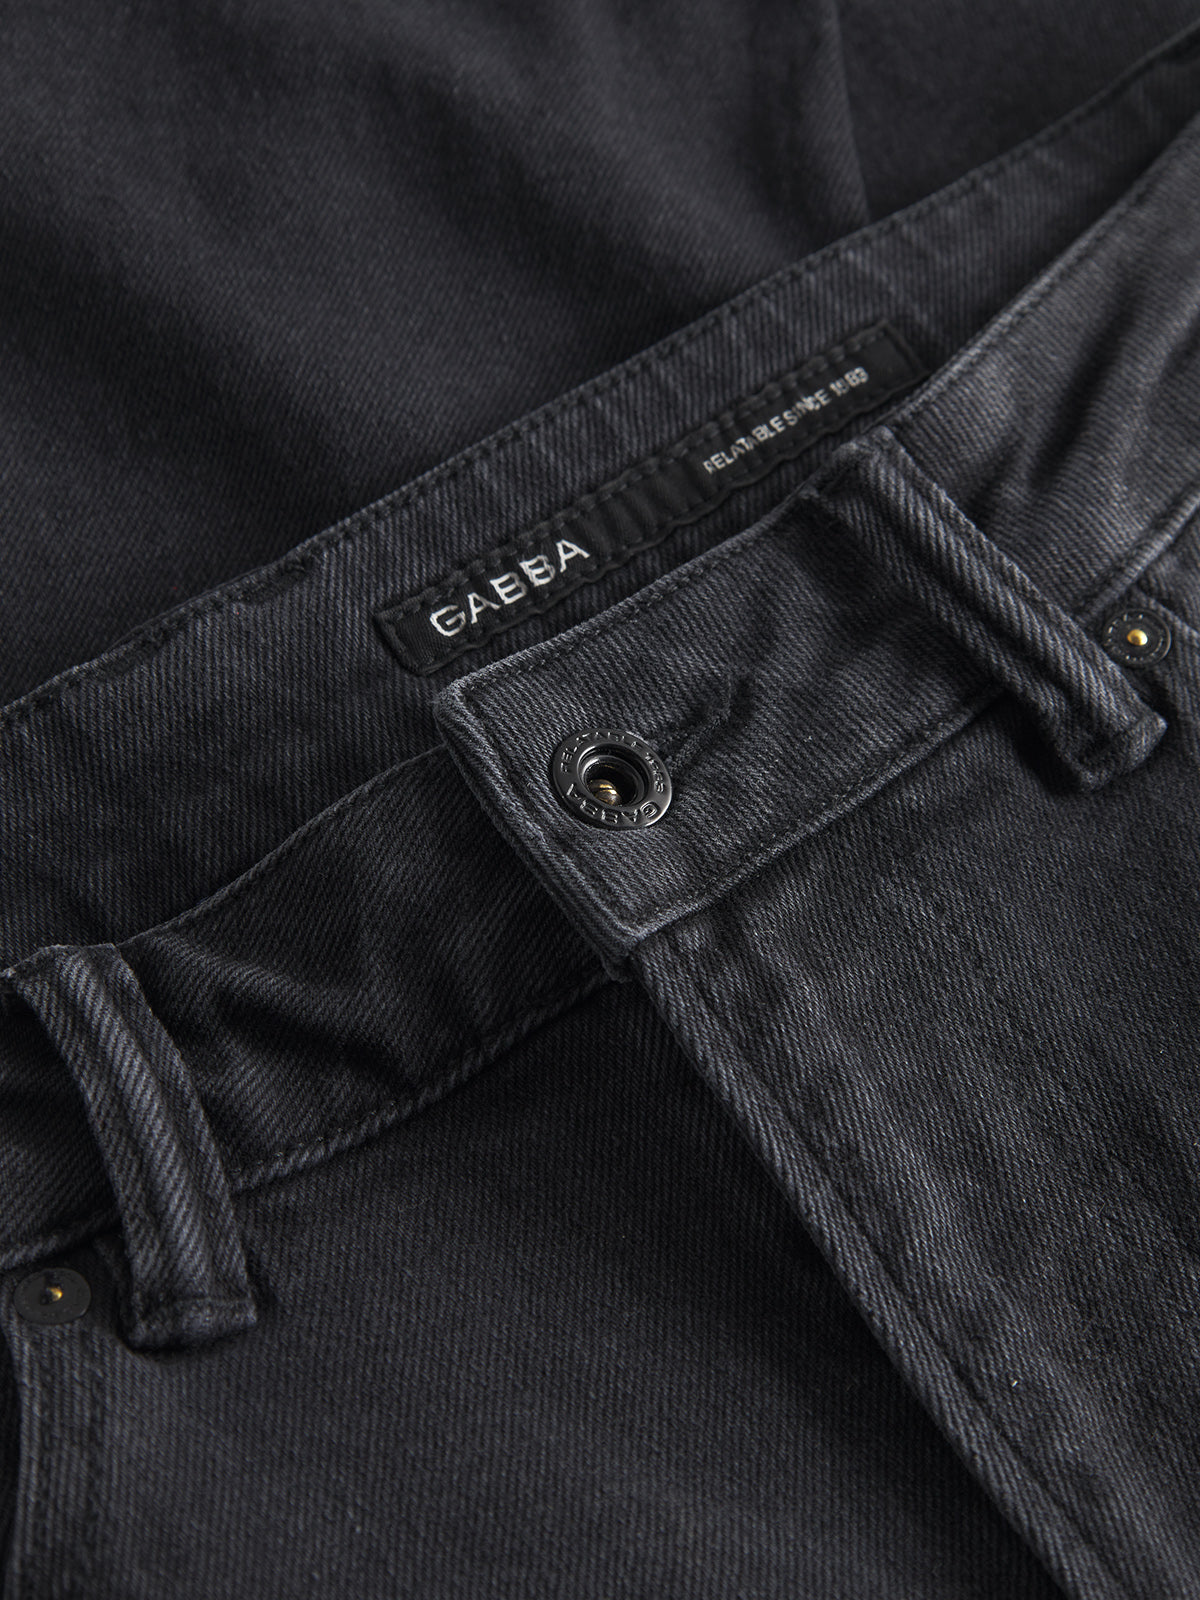 Carl jeans grey denim K4430 - Gabba